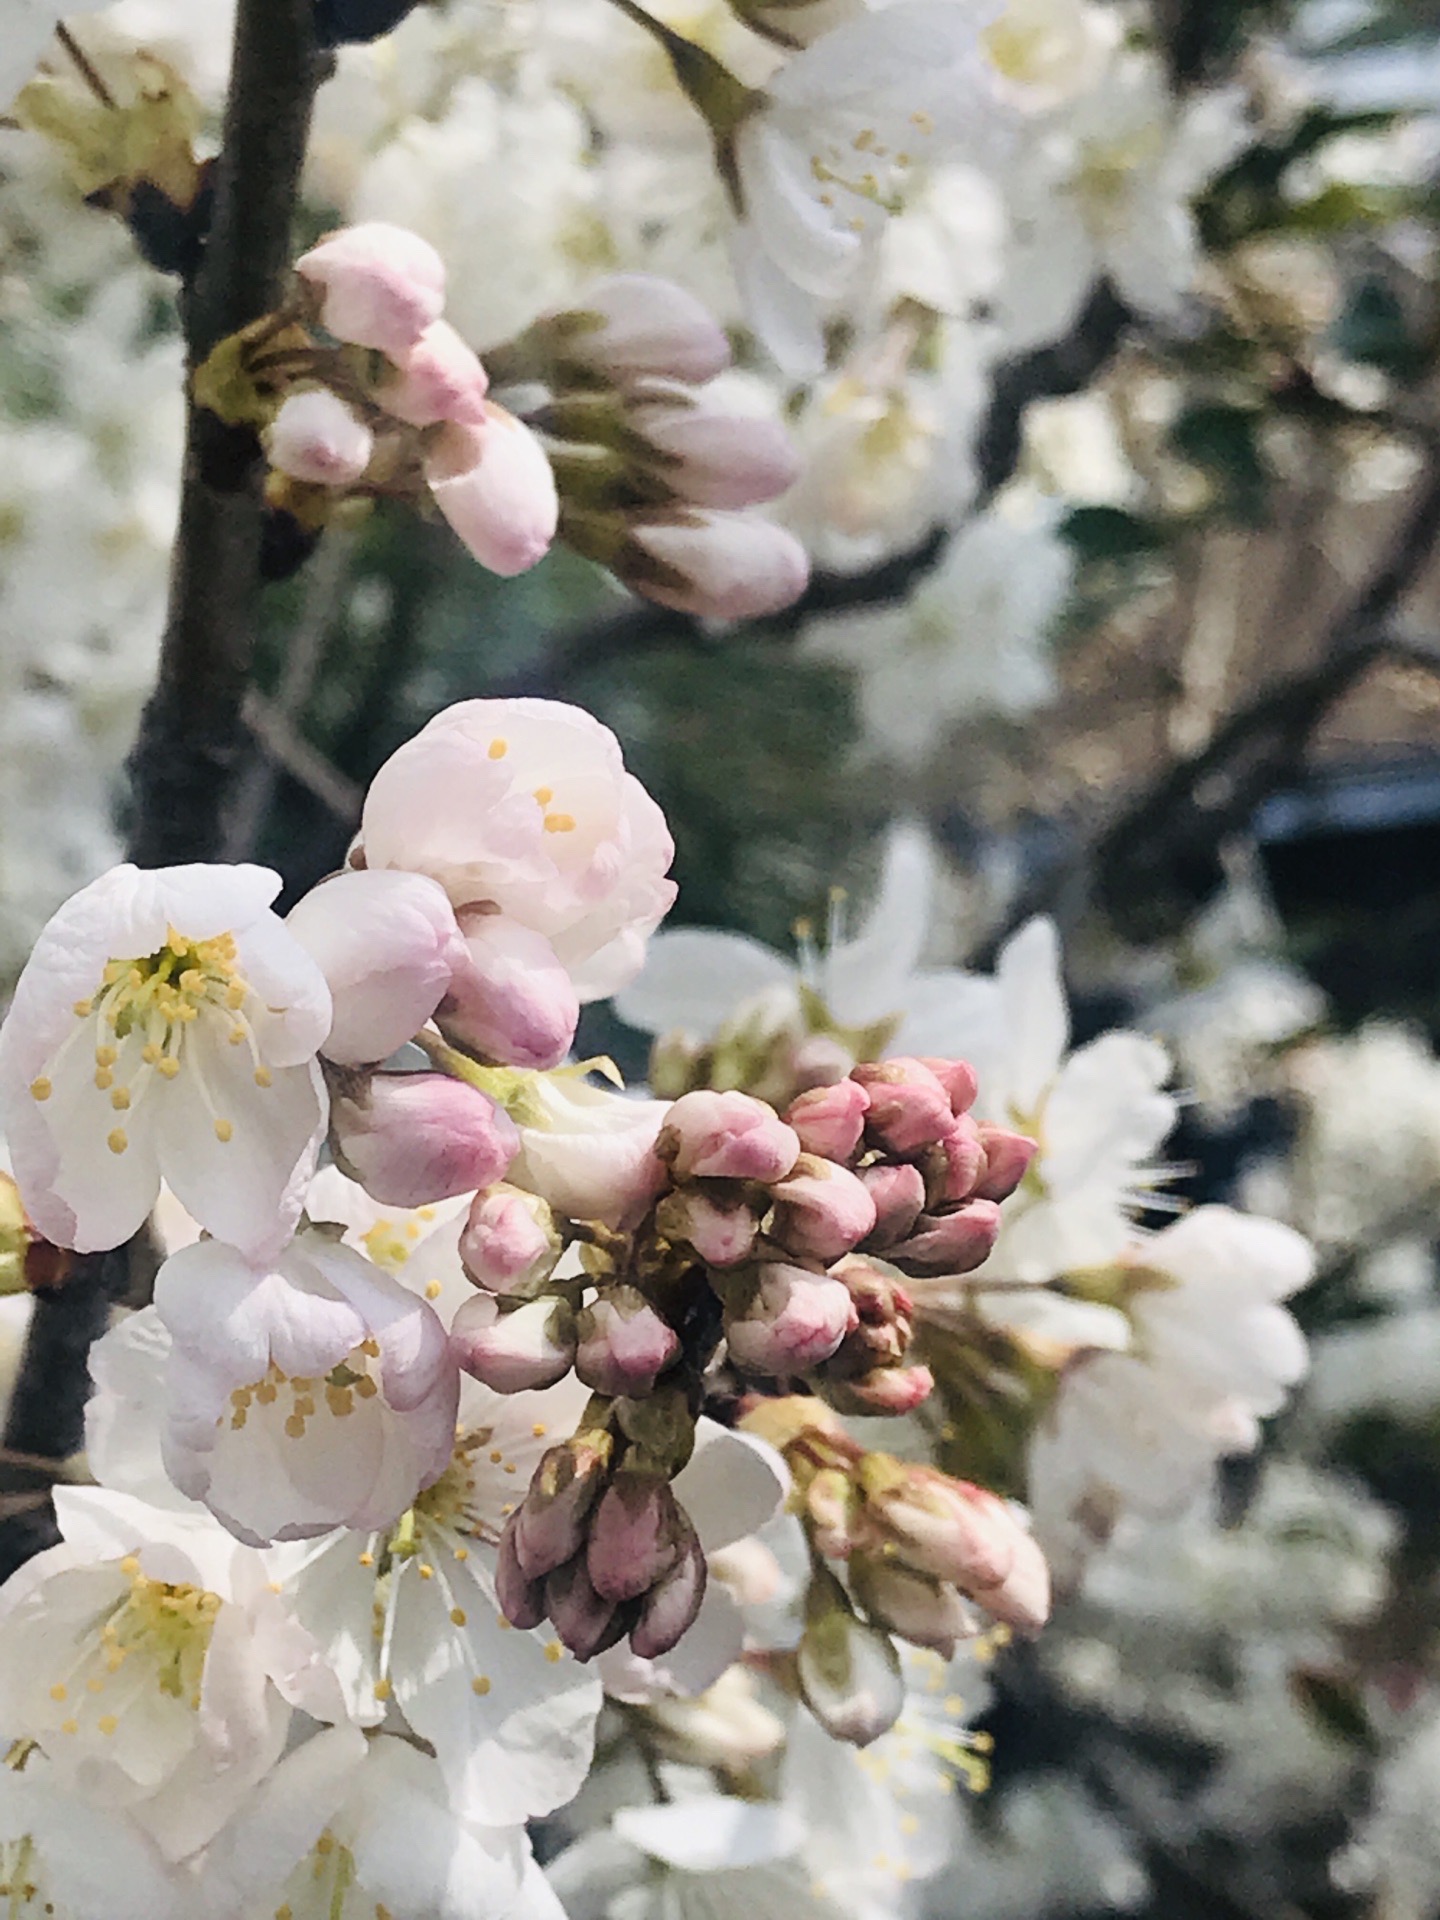 樱花🌸早春三月（手机拍摄于日本居民区街头） 2020年3月，世界最著名的丰田汽车总部所在地～日本爱知